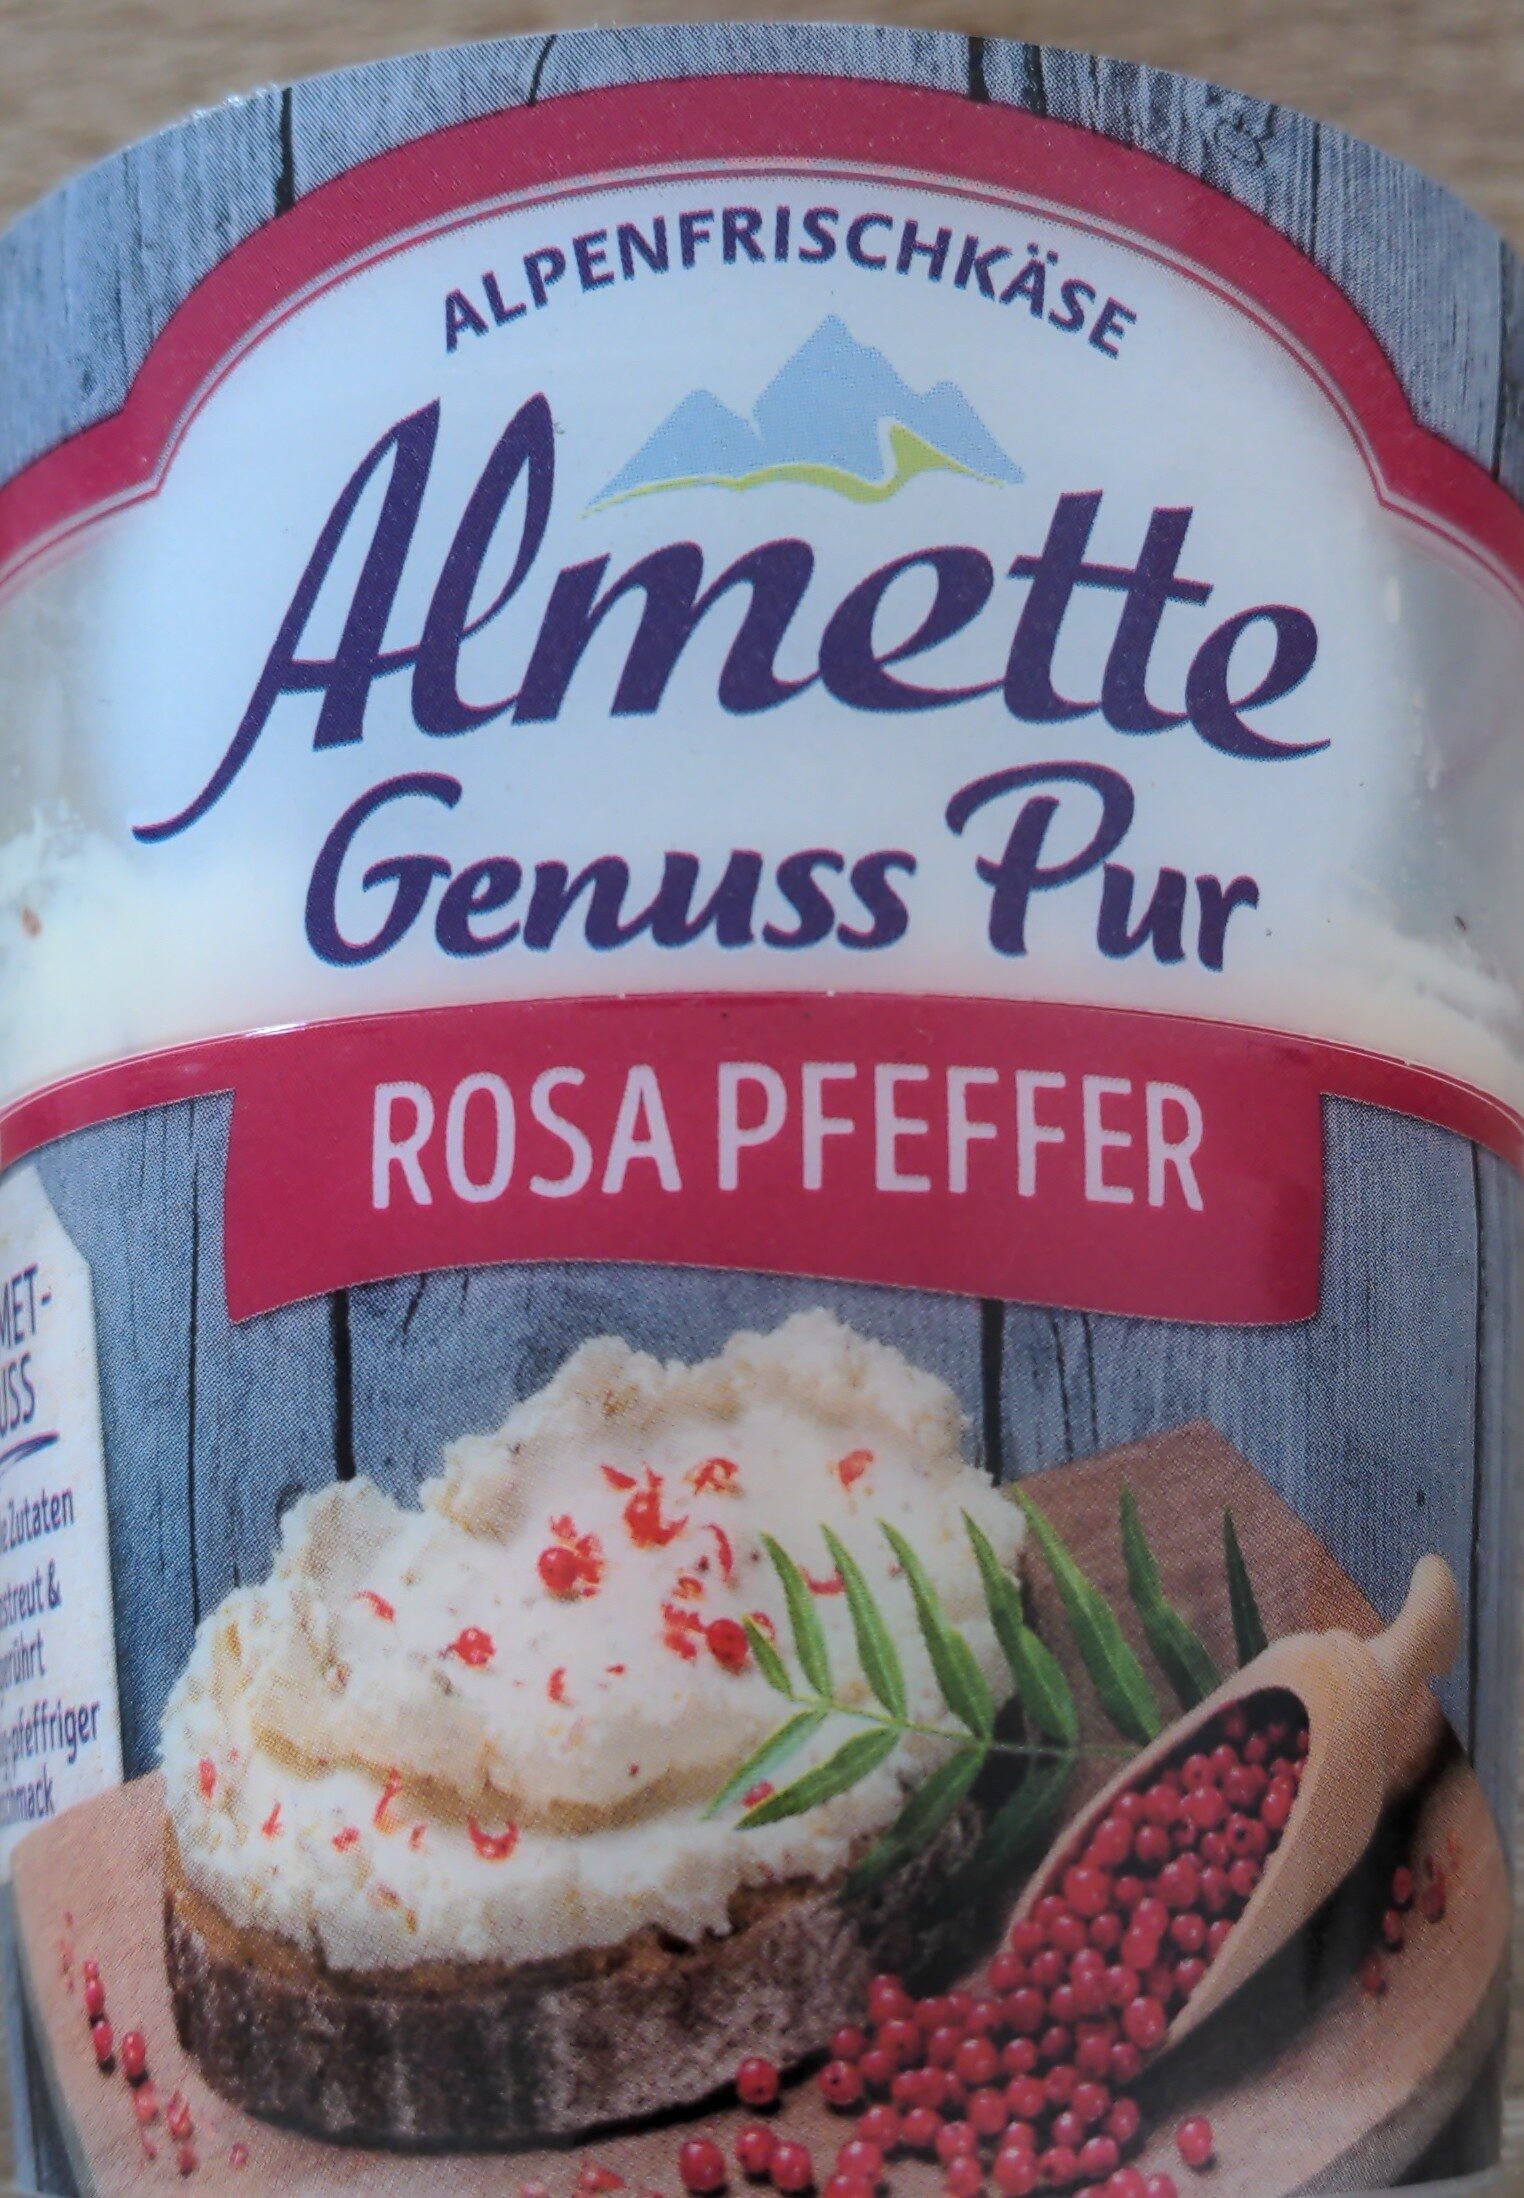 Almette Genuss Pur - Rosa Pfeffer - Product - de